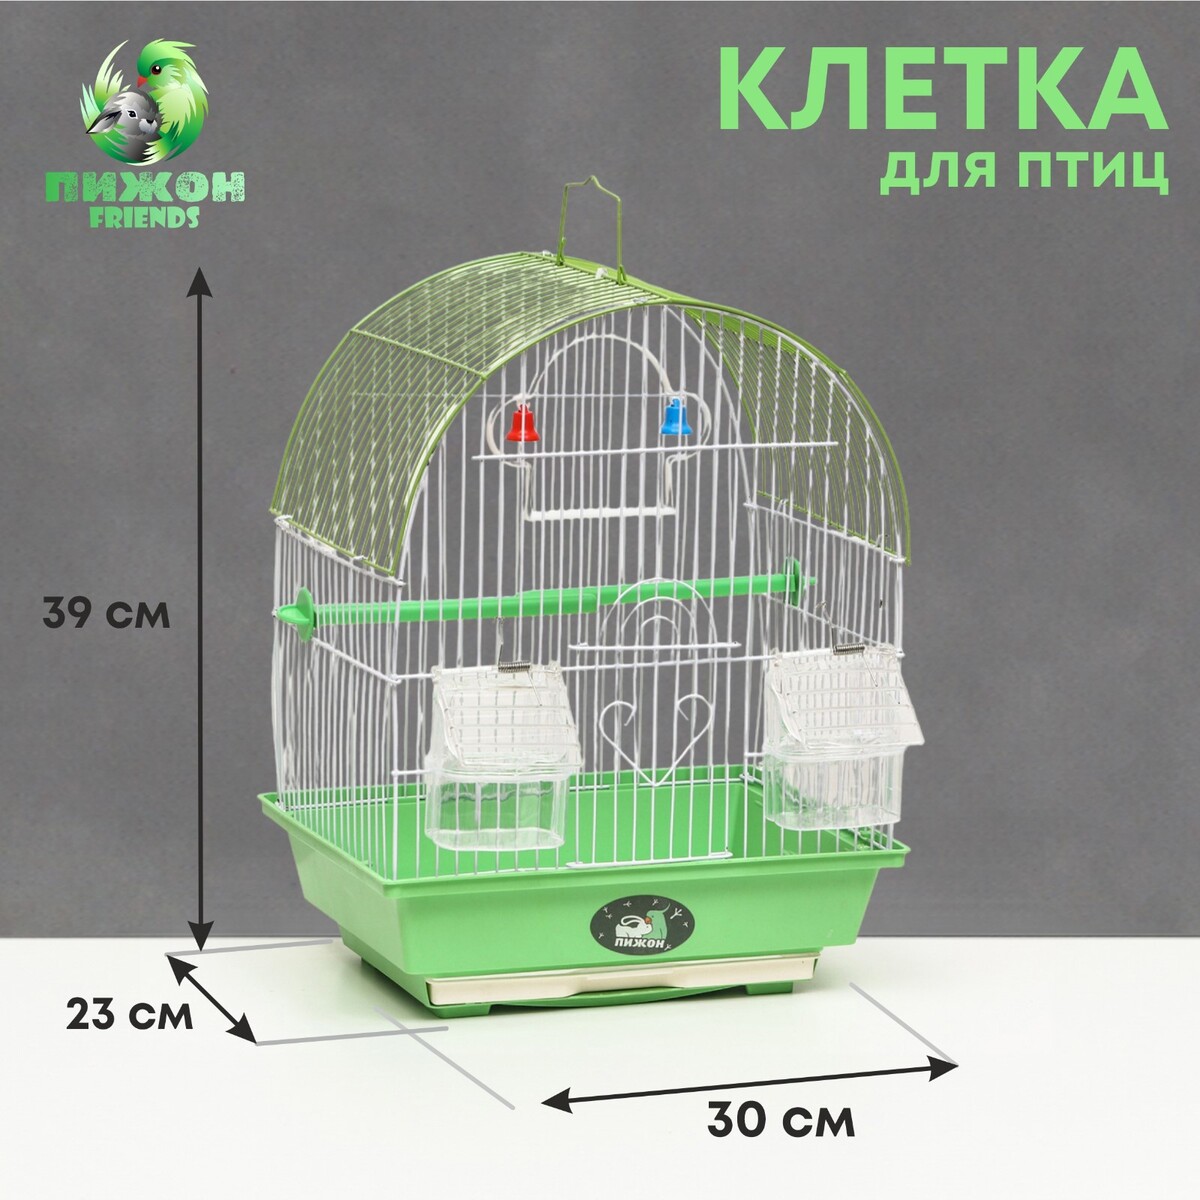 Клетка для птиц укомплектованная bd-1/3c, 30 х 23 х 39 см, зеленая лёгкая йога для похудения идеальное тело за 5 минут в день гарантированный результат в любом возрасте